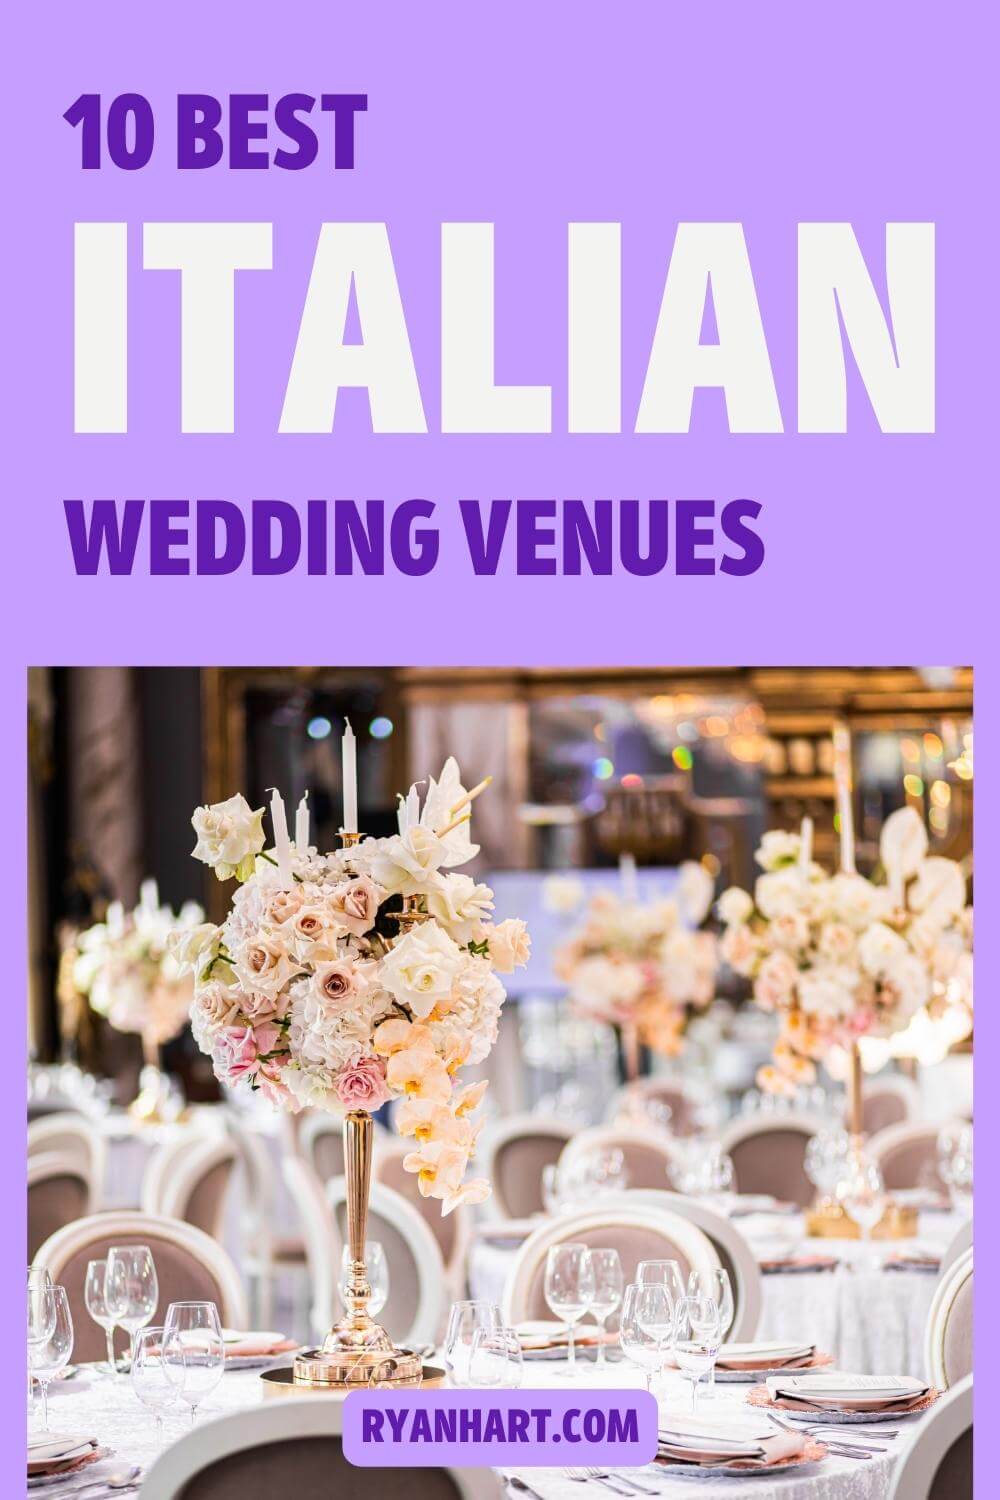 Italian wedding ceremony